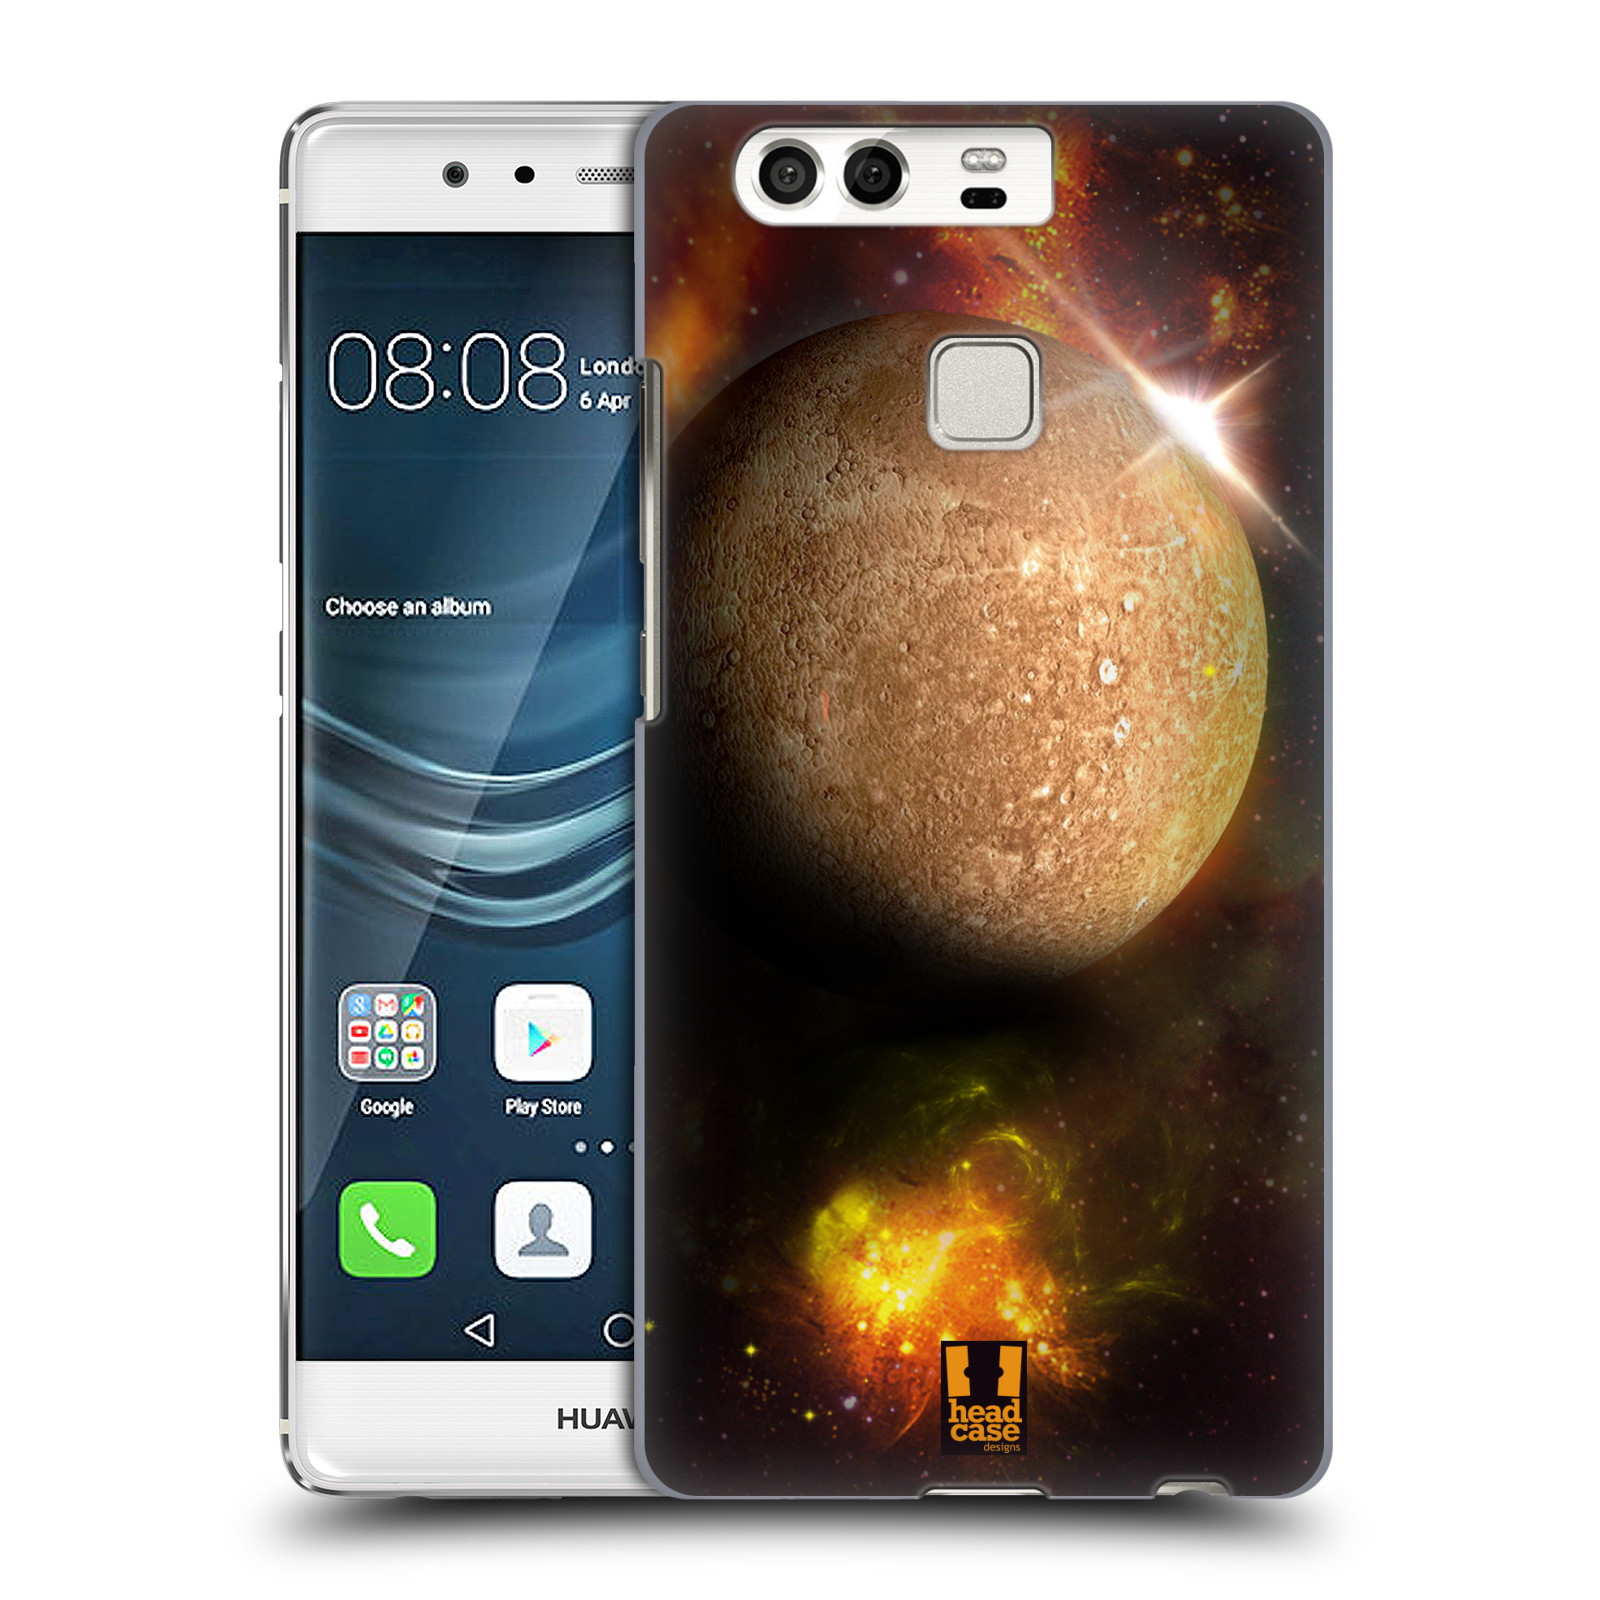 HEAD CASE plastový obal na mobil Huawei P9 / P9 DUAL SIM vzor Vesmírná krása MERKUR PLANETA